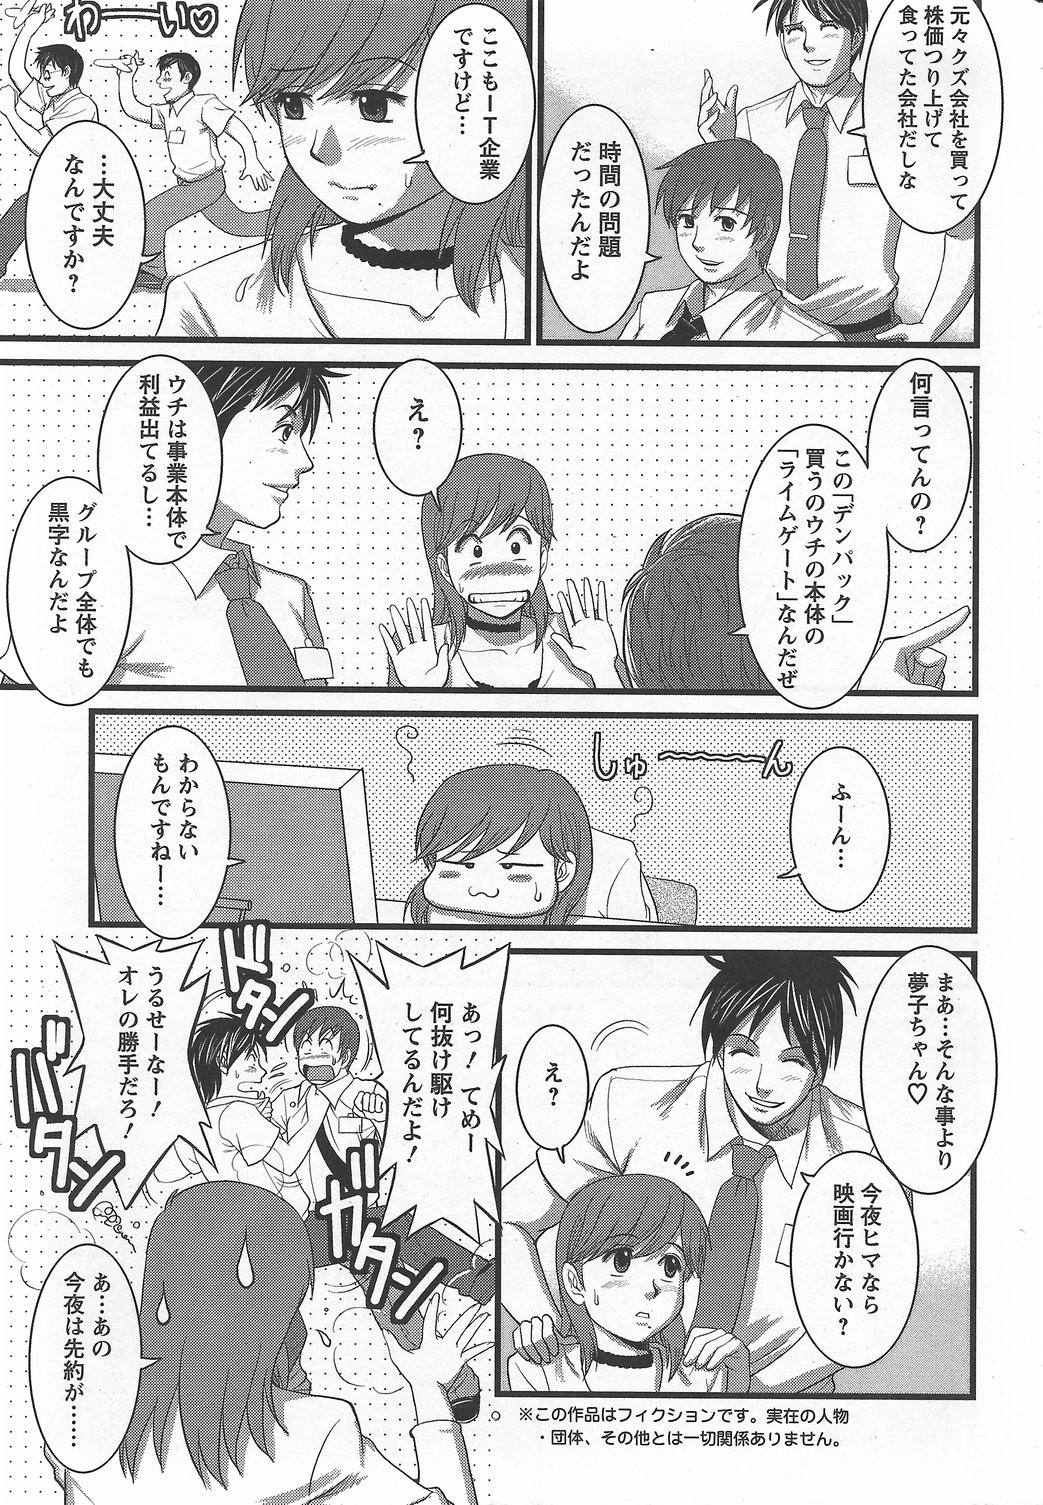 Haken no Muuko-san 6 [Saigado] page 8 full